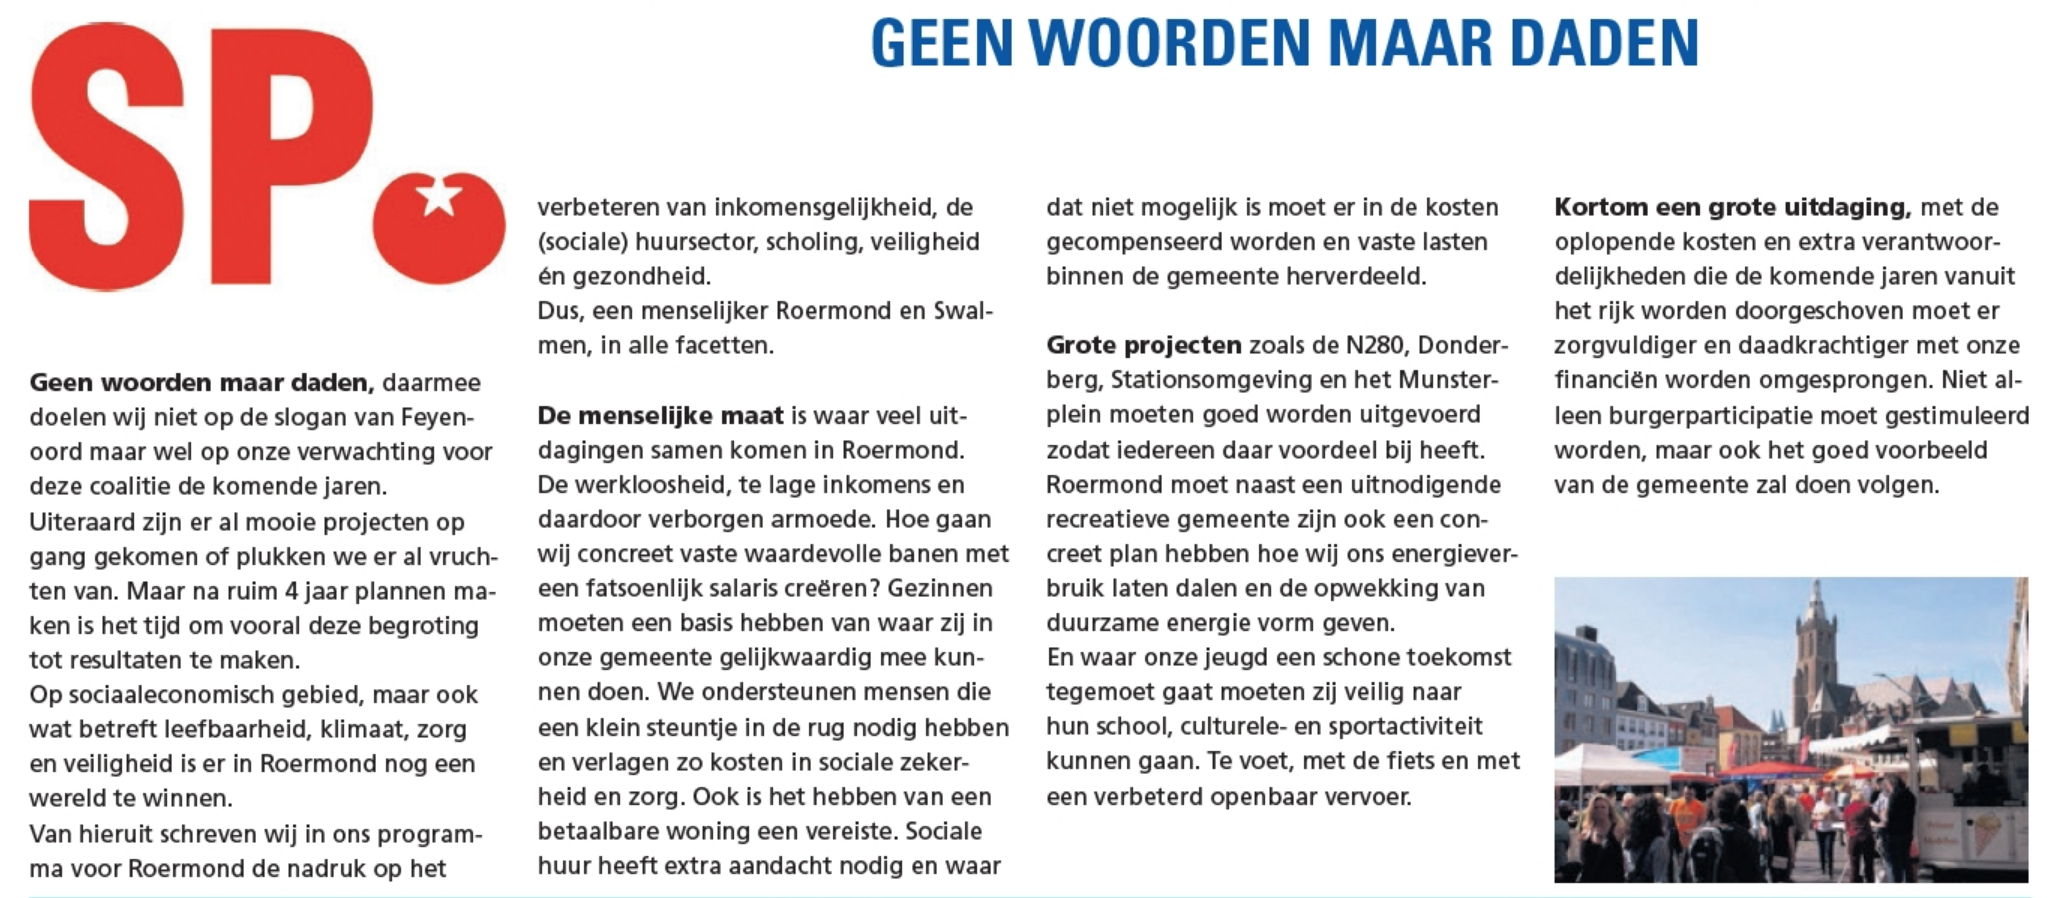 https://roermond.sp.nl/nieuws/2018/11/gemeentebegroting-2019